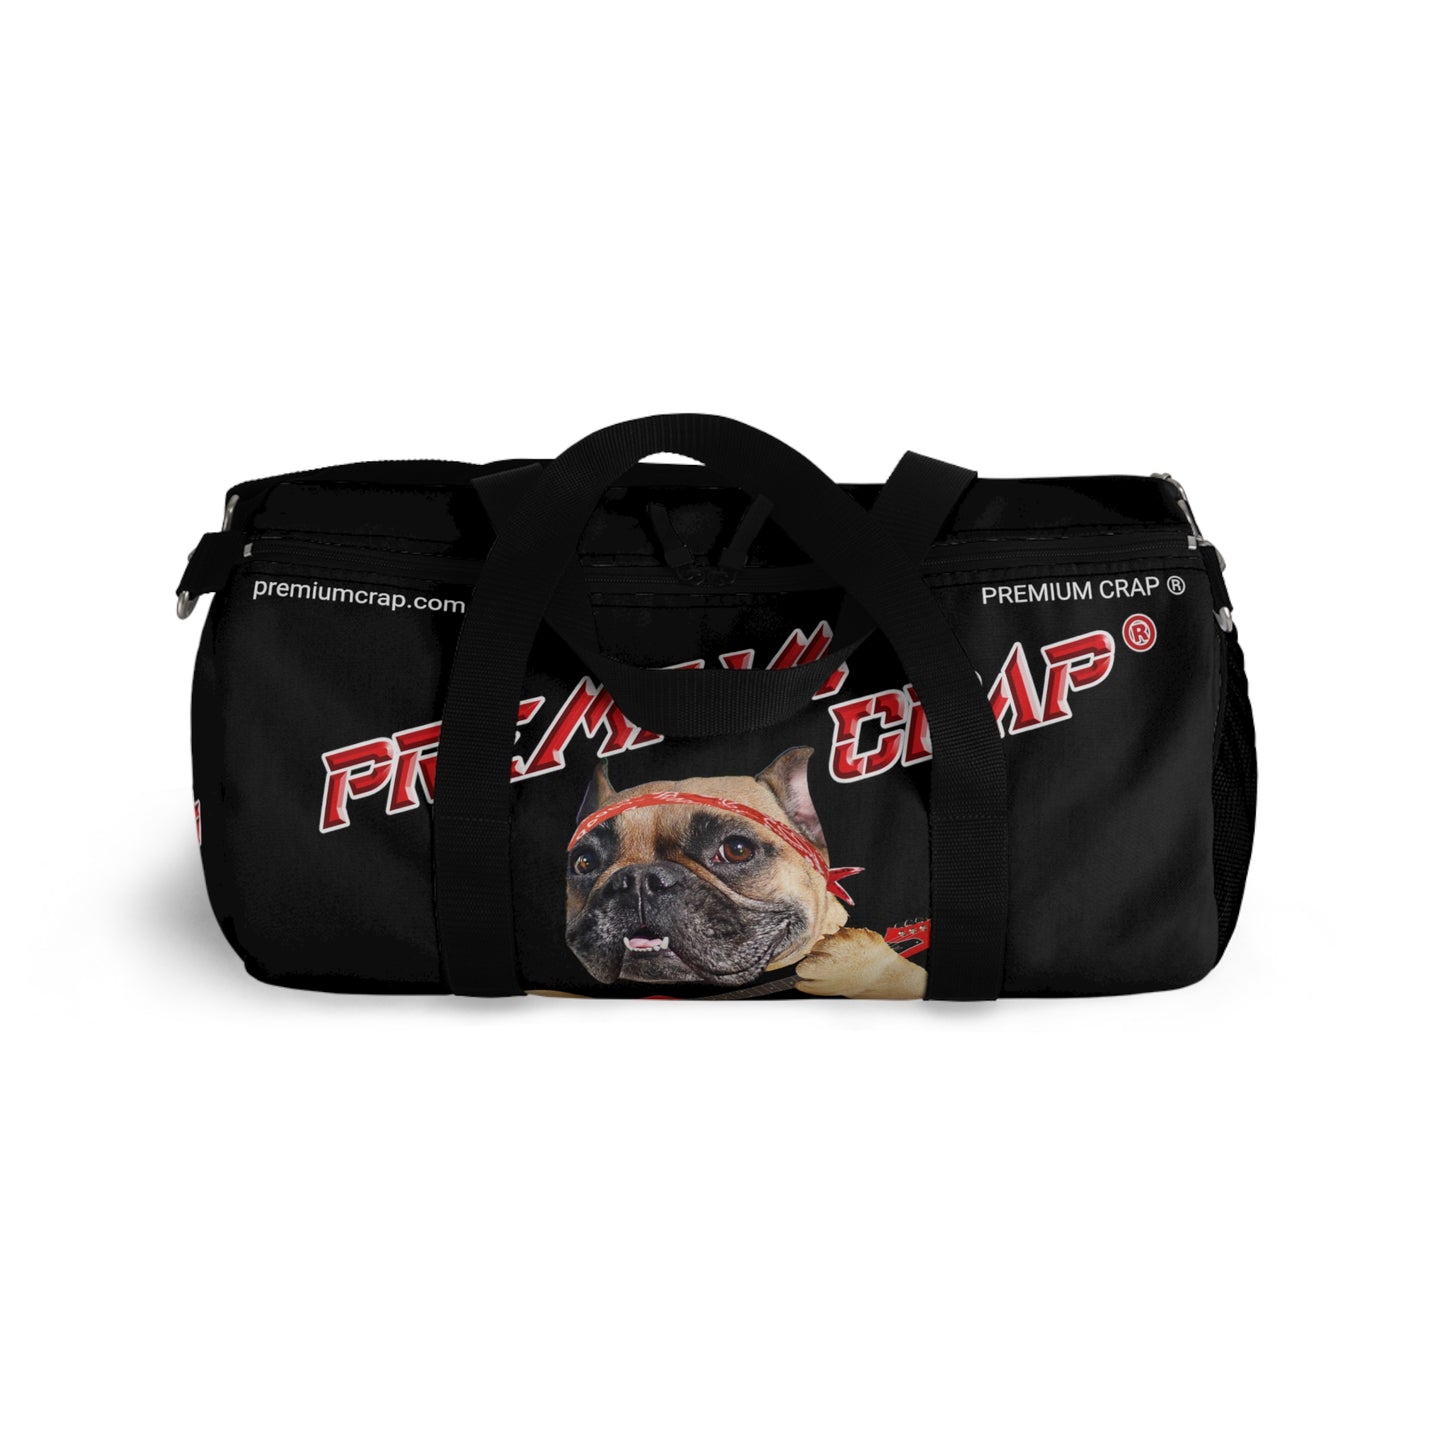 Premium Crap II Duffel Bag